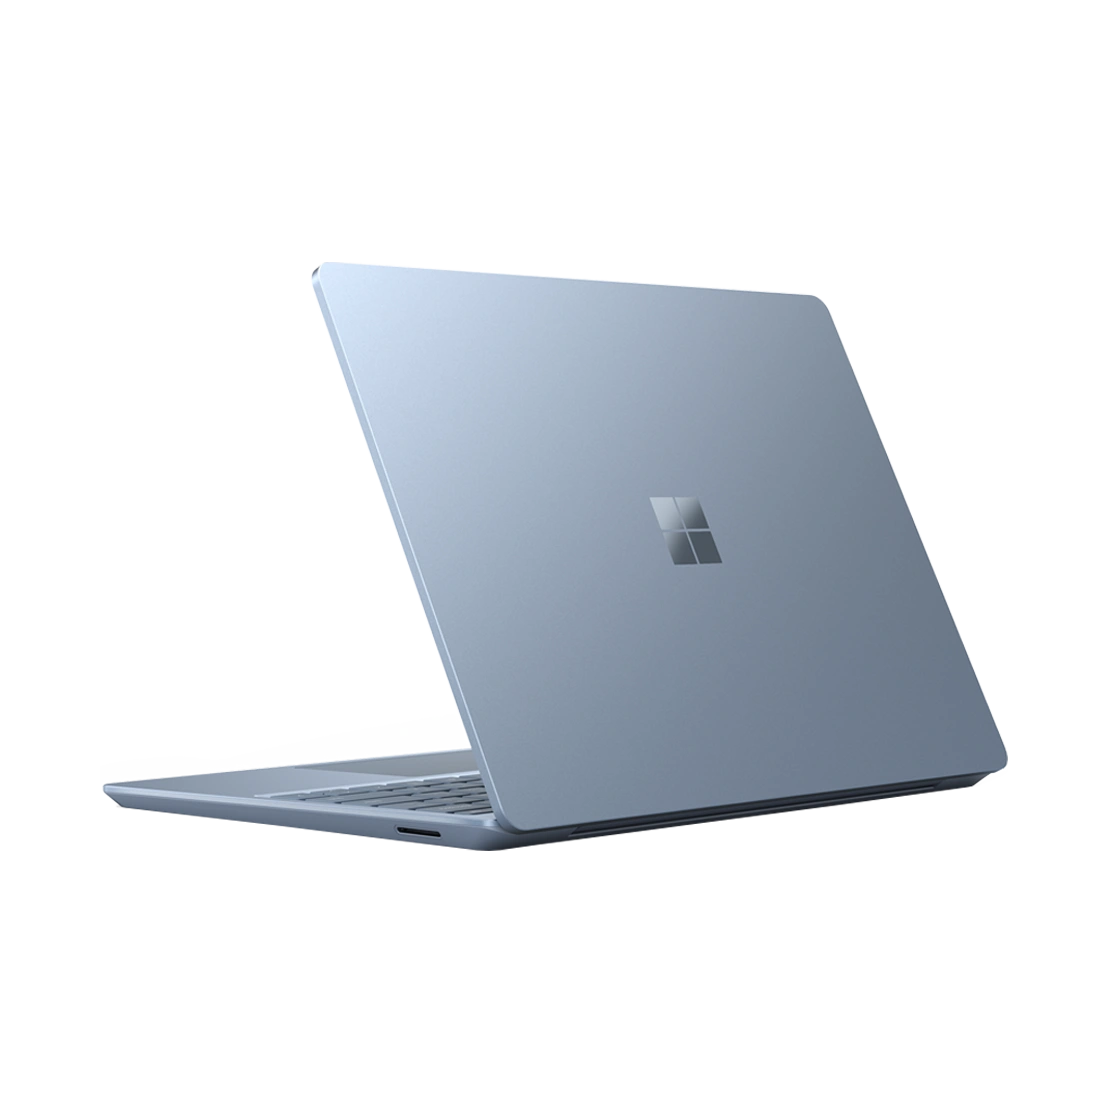 مایکروسافت سرفیس لپ تاپ گو 2 مدل Corei5 8GB 256GB 12 inch【AppleℕIC】